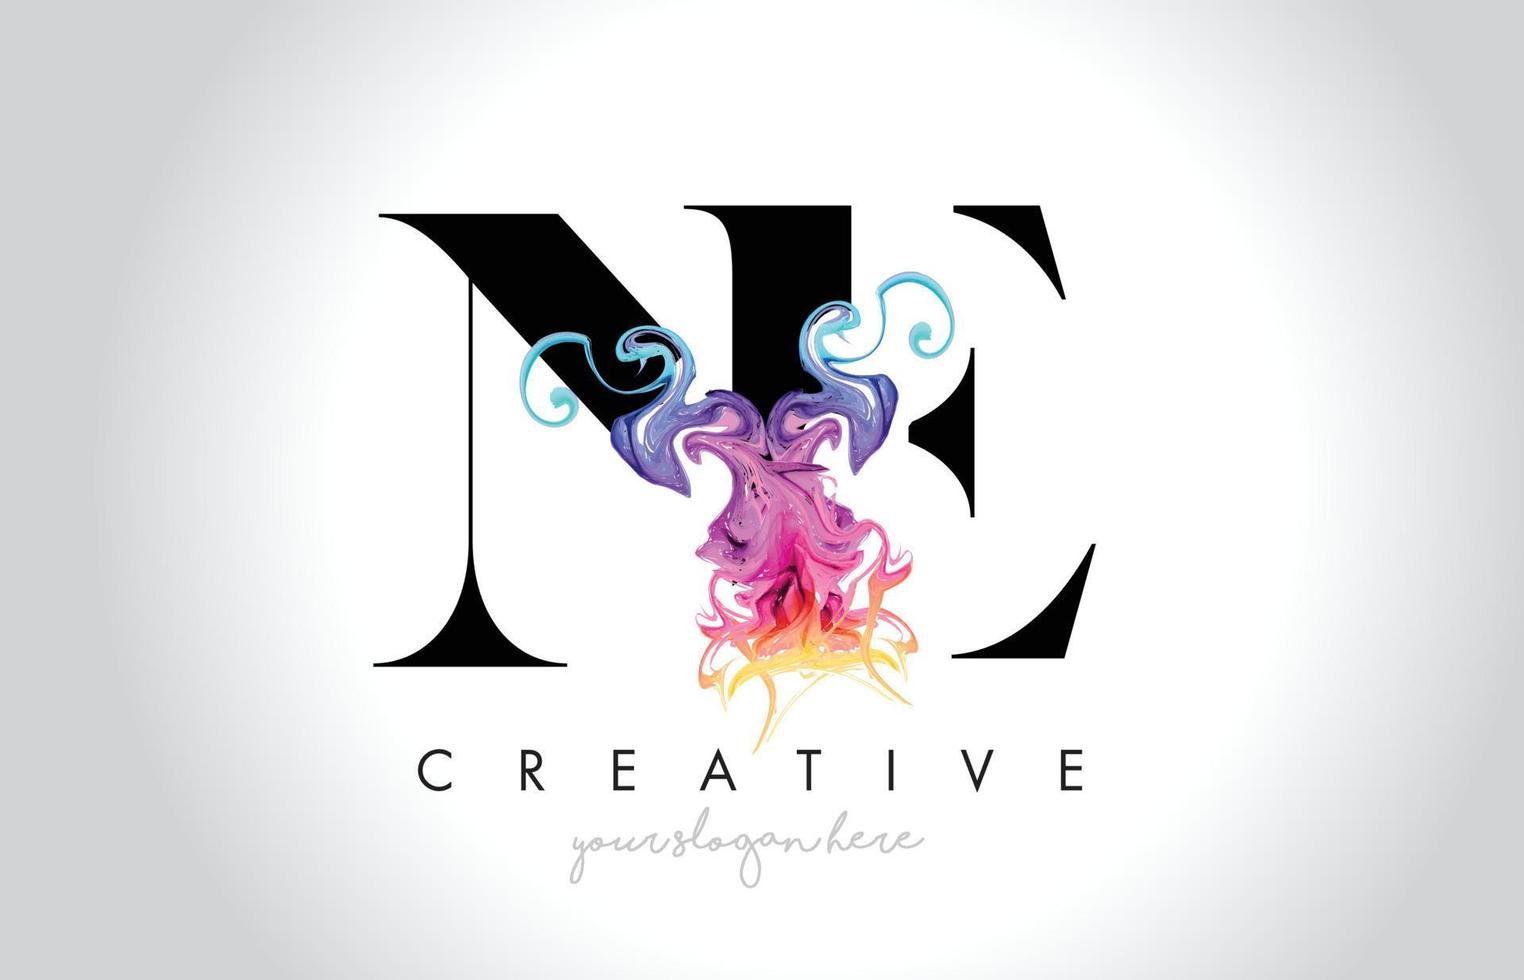 ne création de logo de lettre créative vibrante avec vecteur d'encre de fumée colorée qui coule